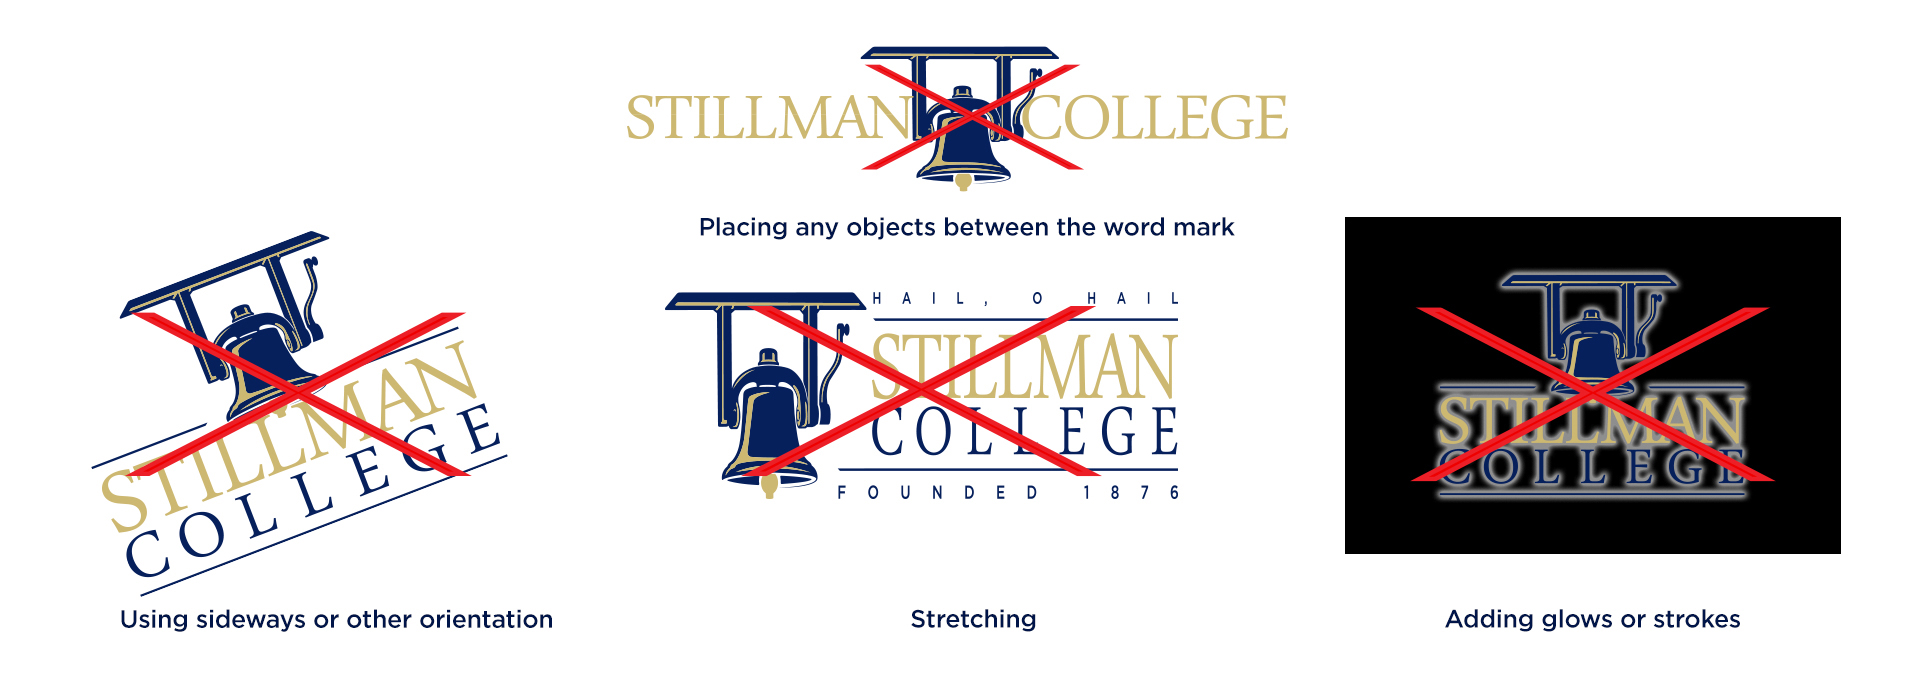 Stillman College - Improper Logo Usage